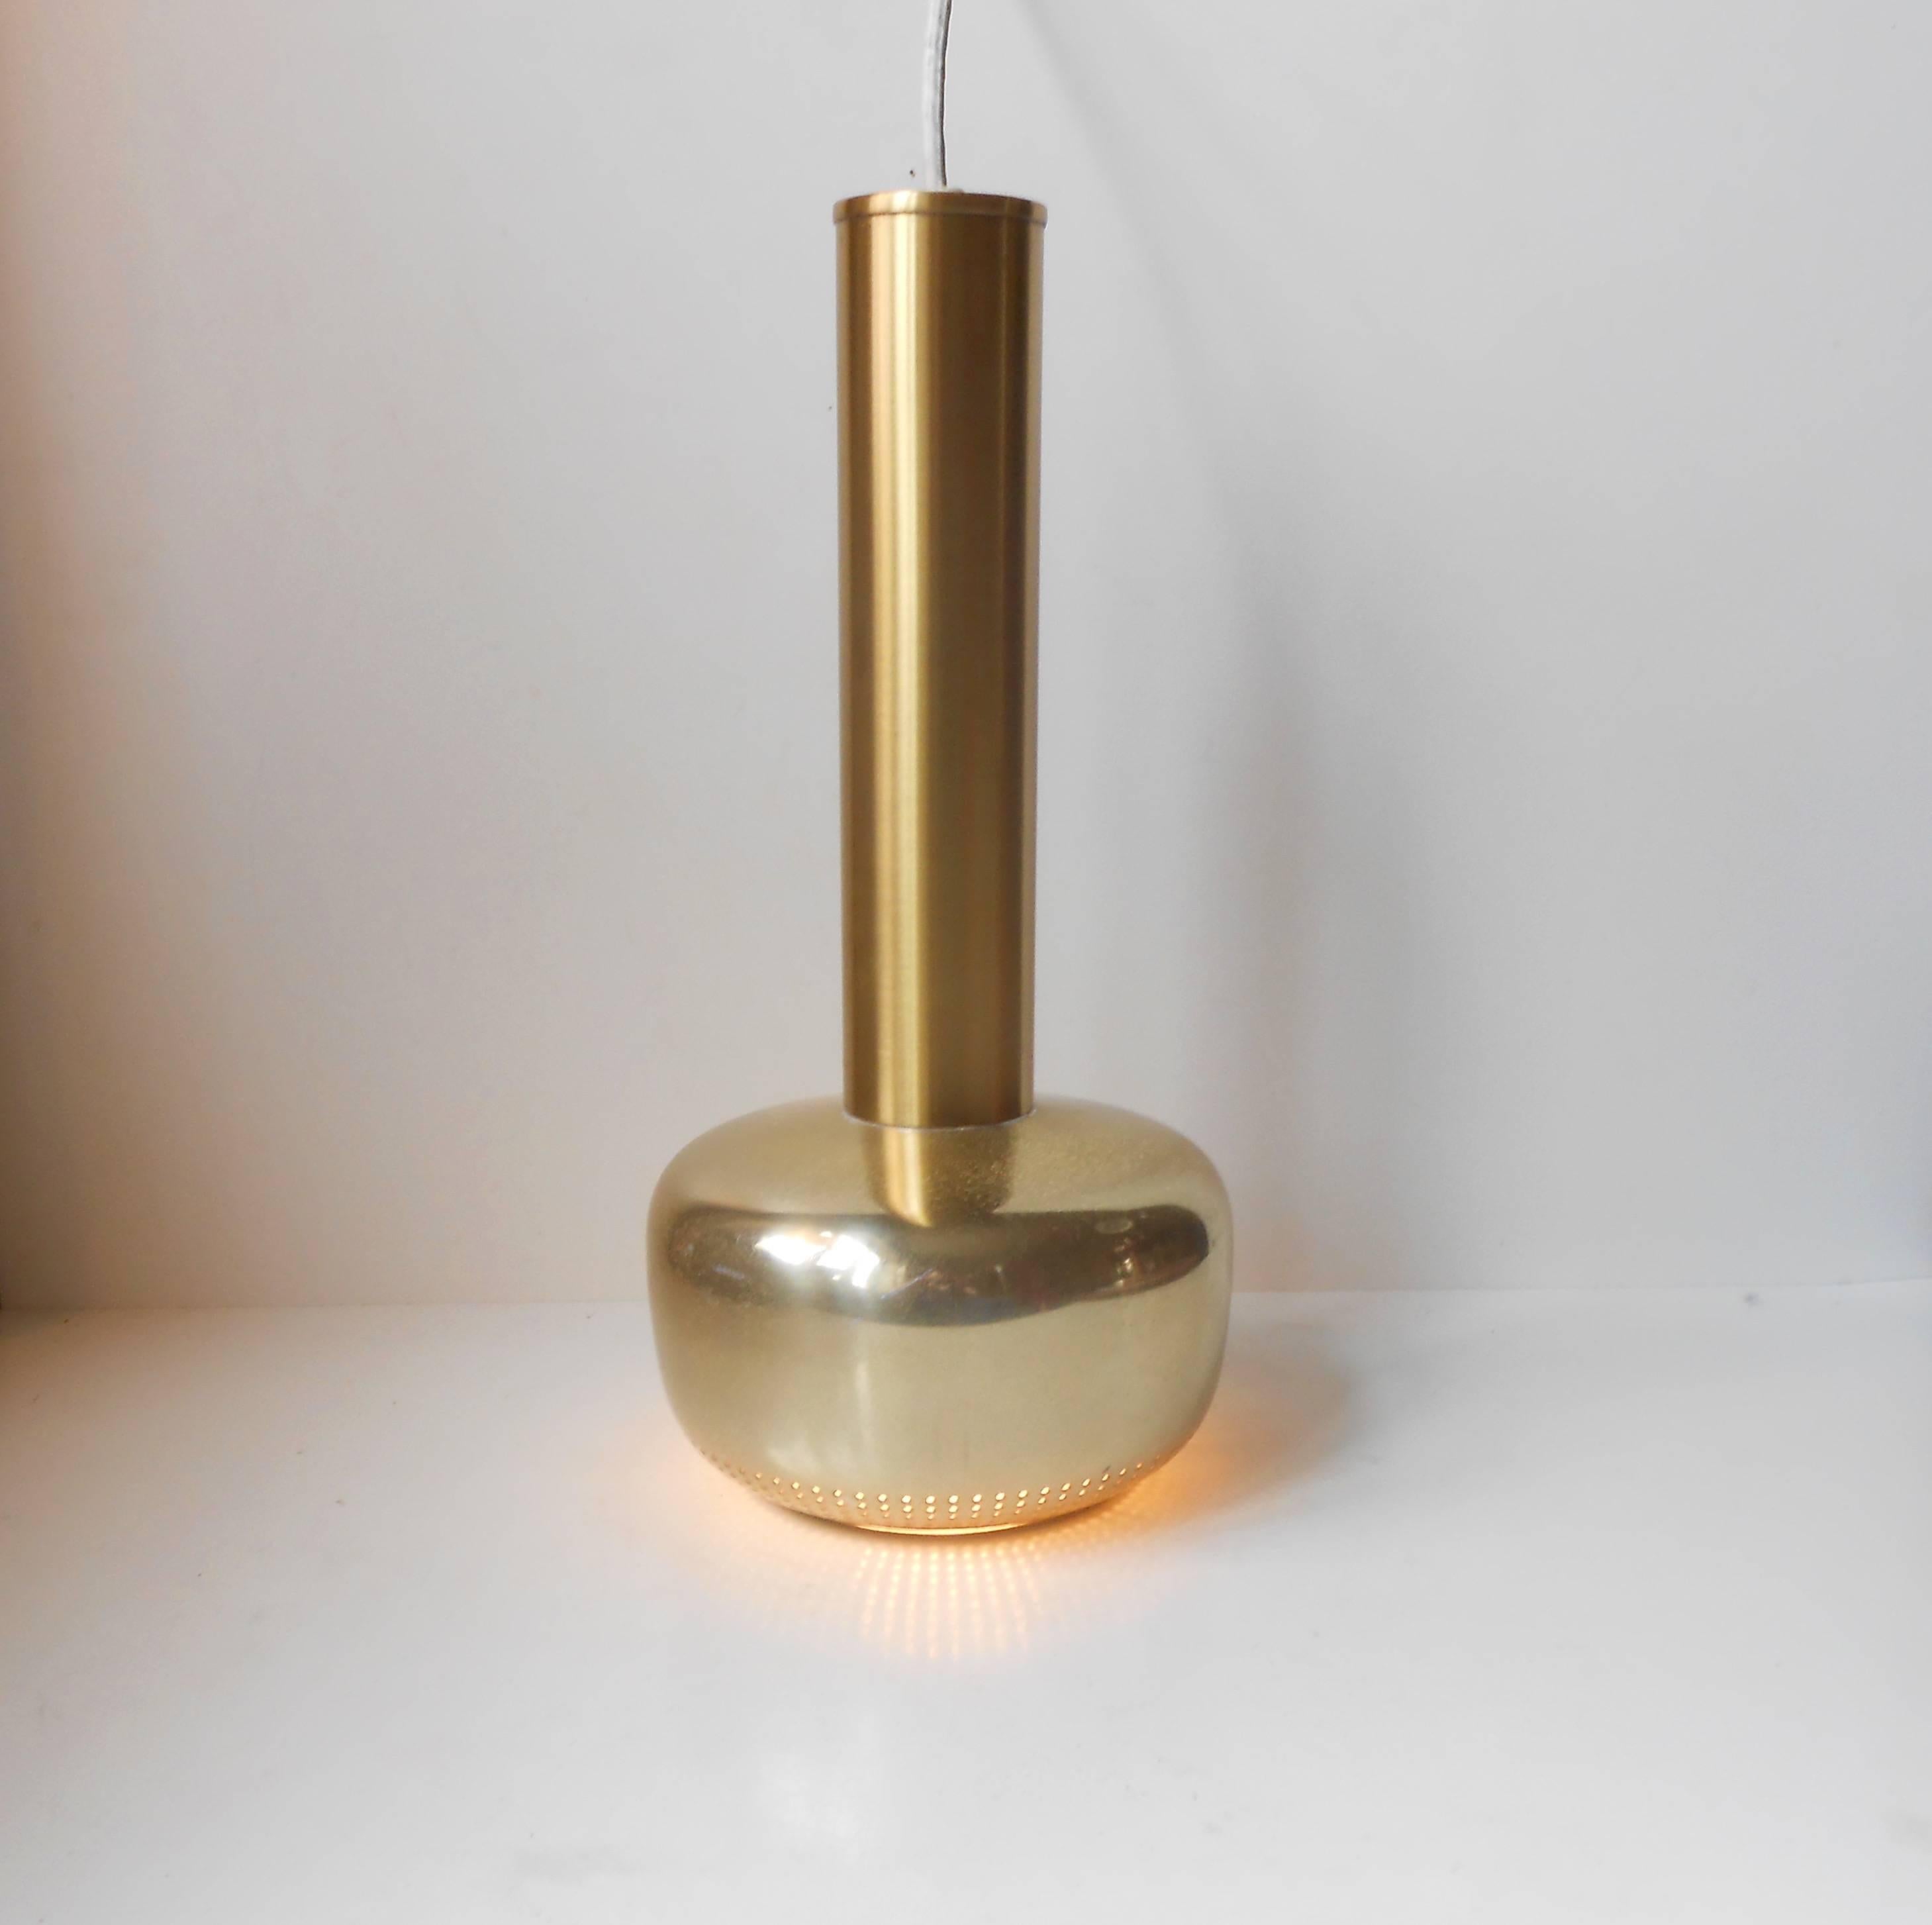 Vilhelm Lauritzen 'Gold Pendant' lamp for Louis Poulsen, Denmark, 1950s Modern. Measurements: H: 15 inches (38 cm), D: 7 inches (18 cm).